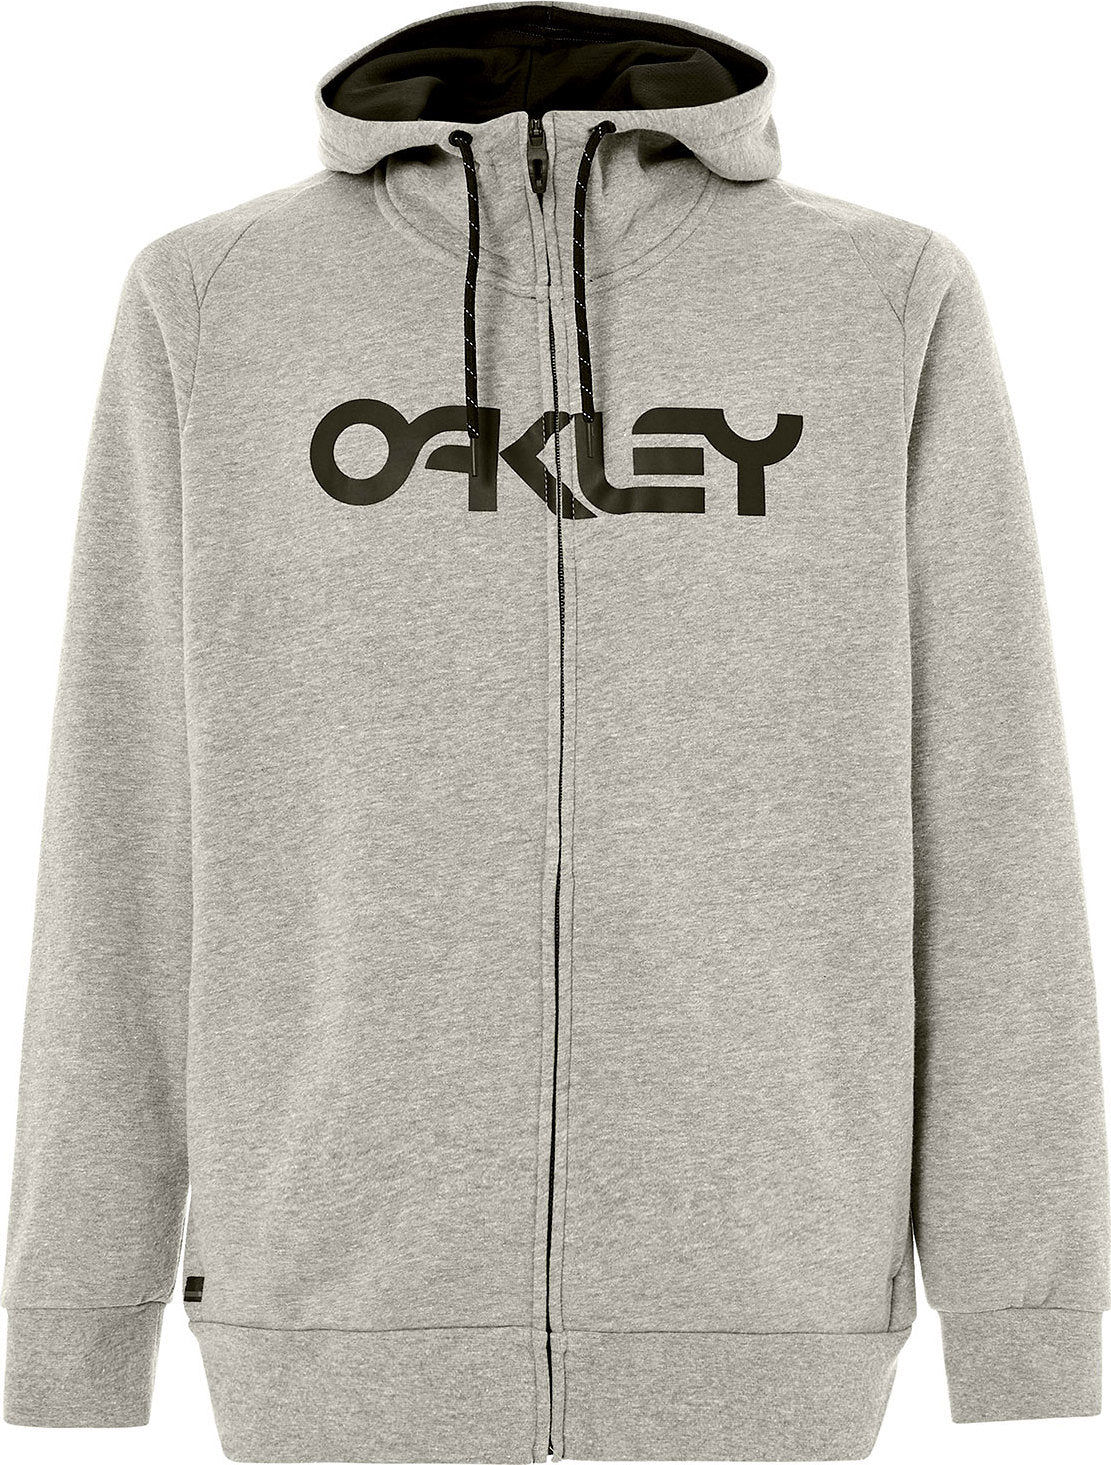 oakley men's zip hoodie